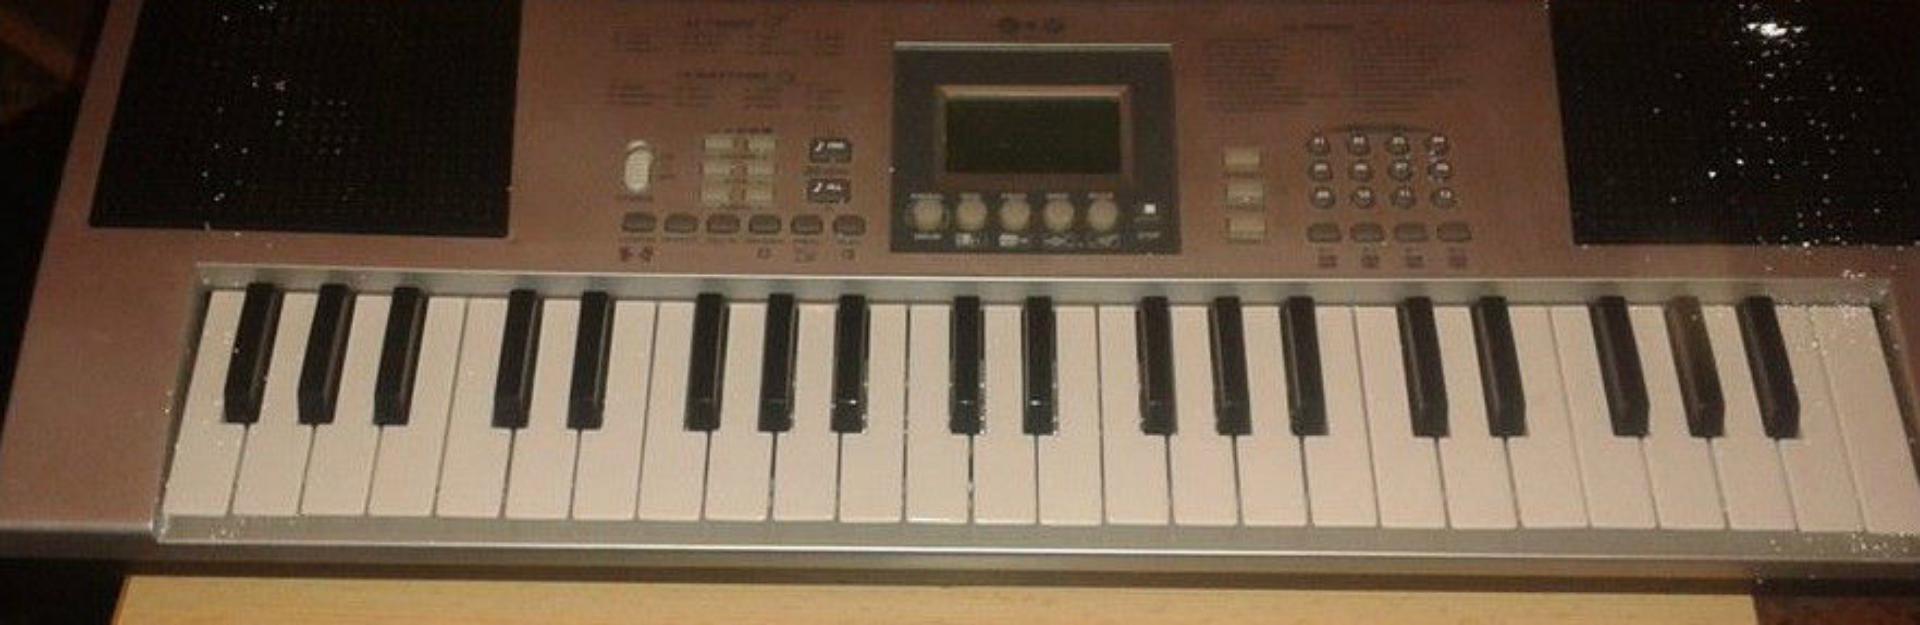 organo piano teclado electrico ideal para principiantes